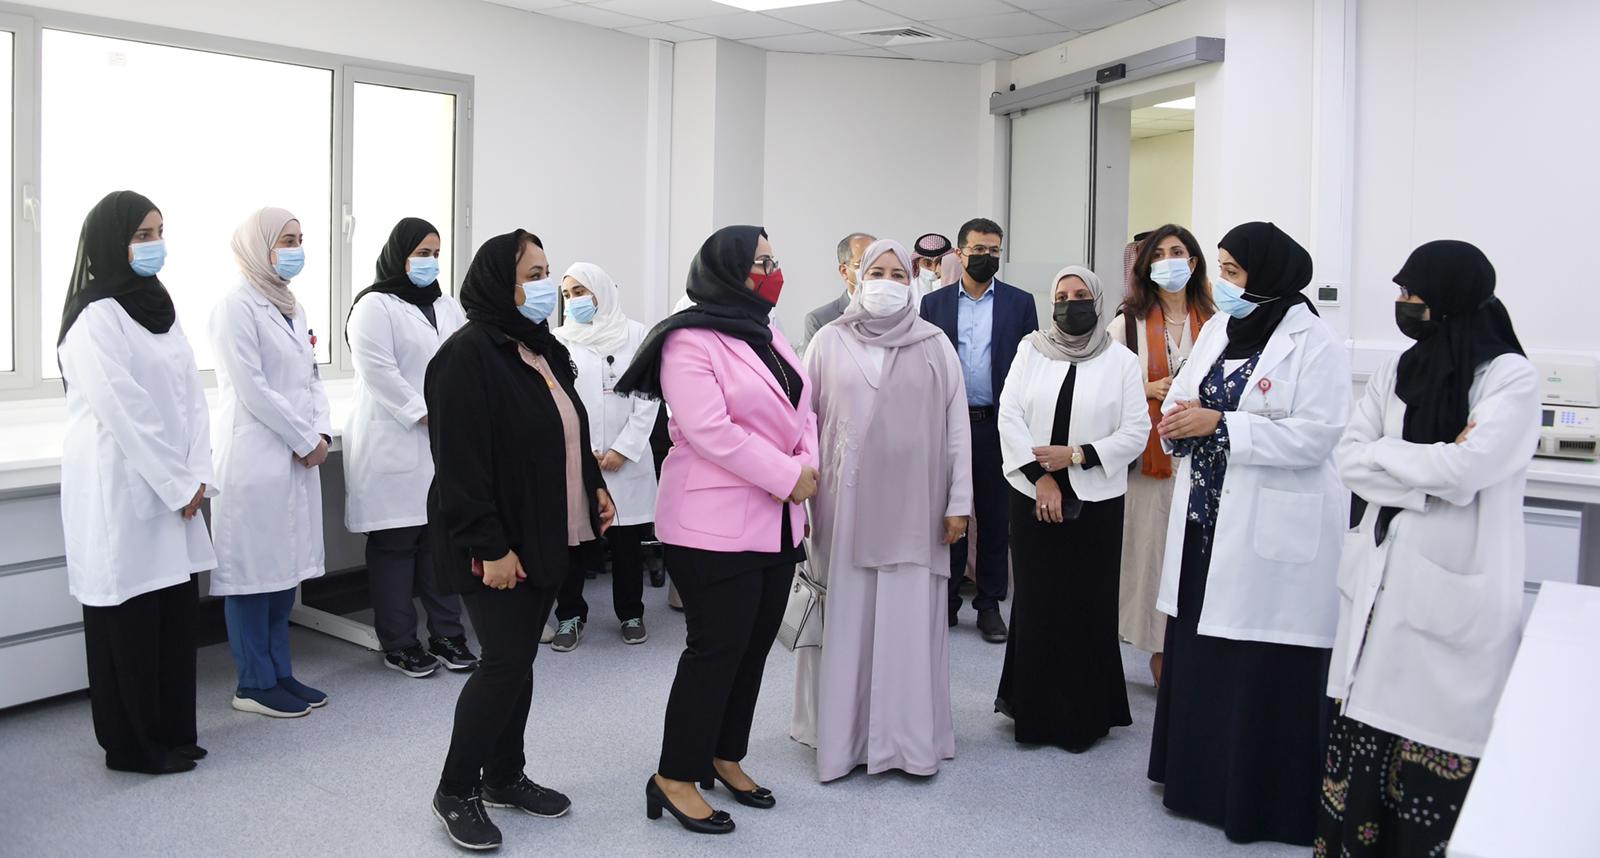 خلال جولتها التفقدية بإدارة الصحة العامة - وزيرة الصحة: مملكة البحرين مستمرة في تعزيز دعائم القطاع الصحي ليكون أكثر استدامة ومرونة 